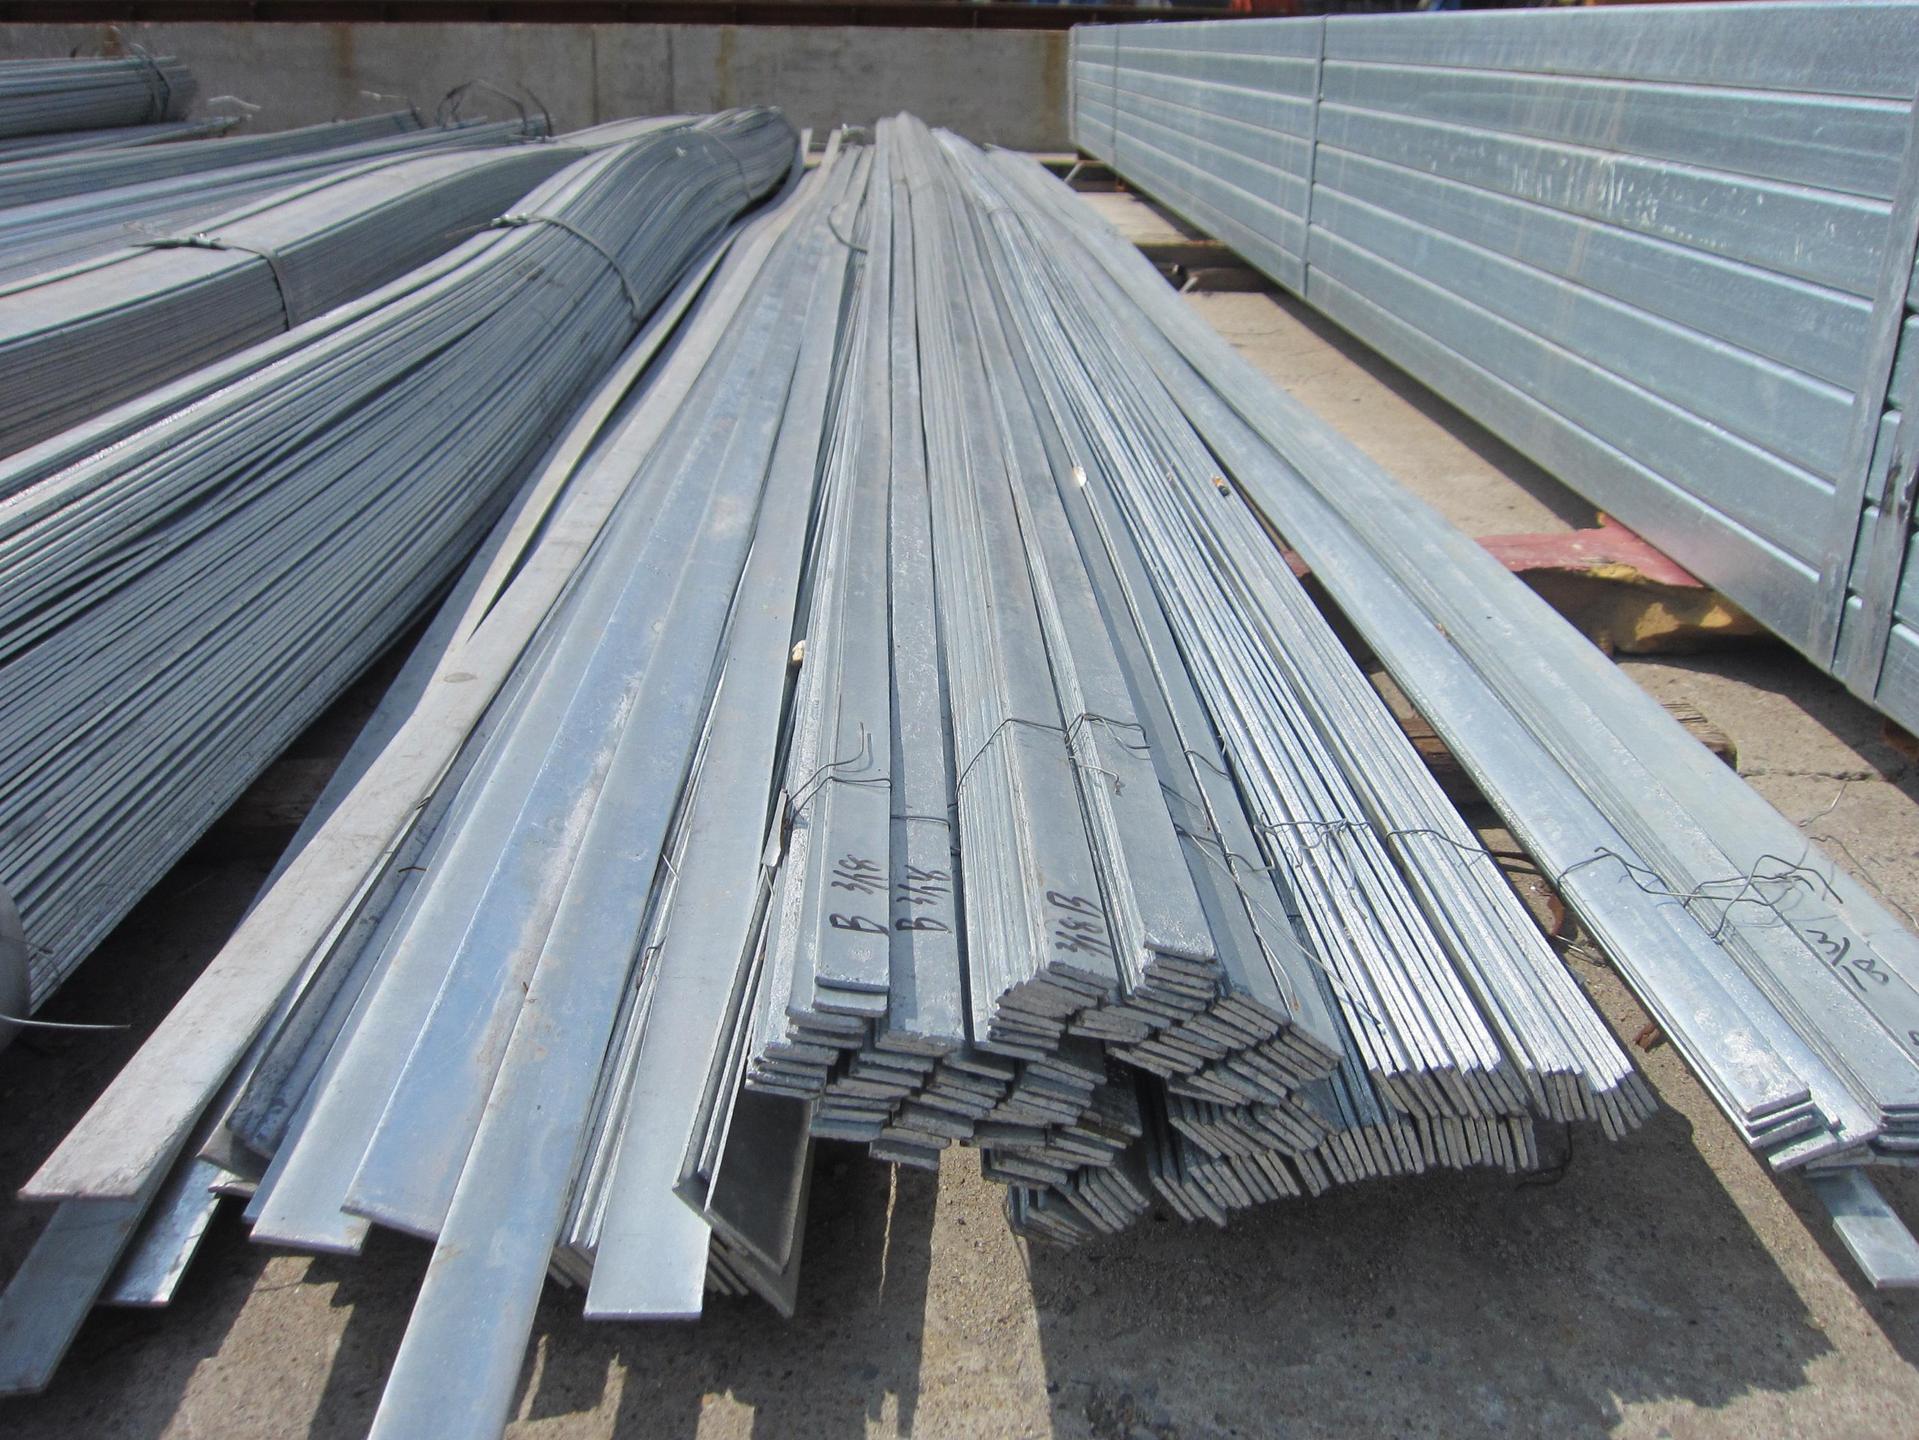 西藏自治区阿里地区金属制品有限公司现有现货6000吨扁钢规格型号齐全质优价廉 在线报价 欢迎来电